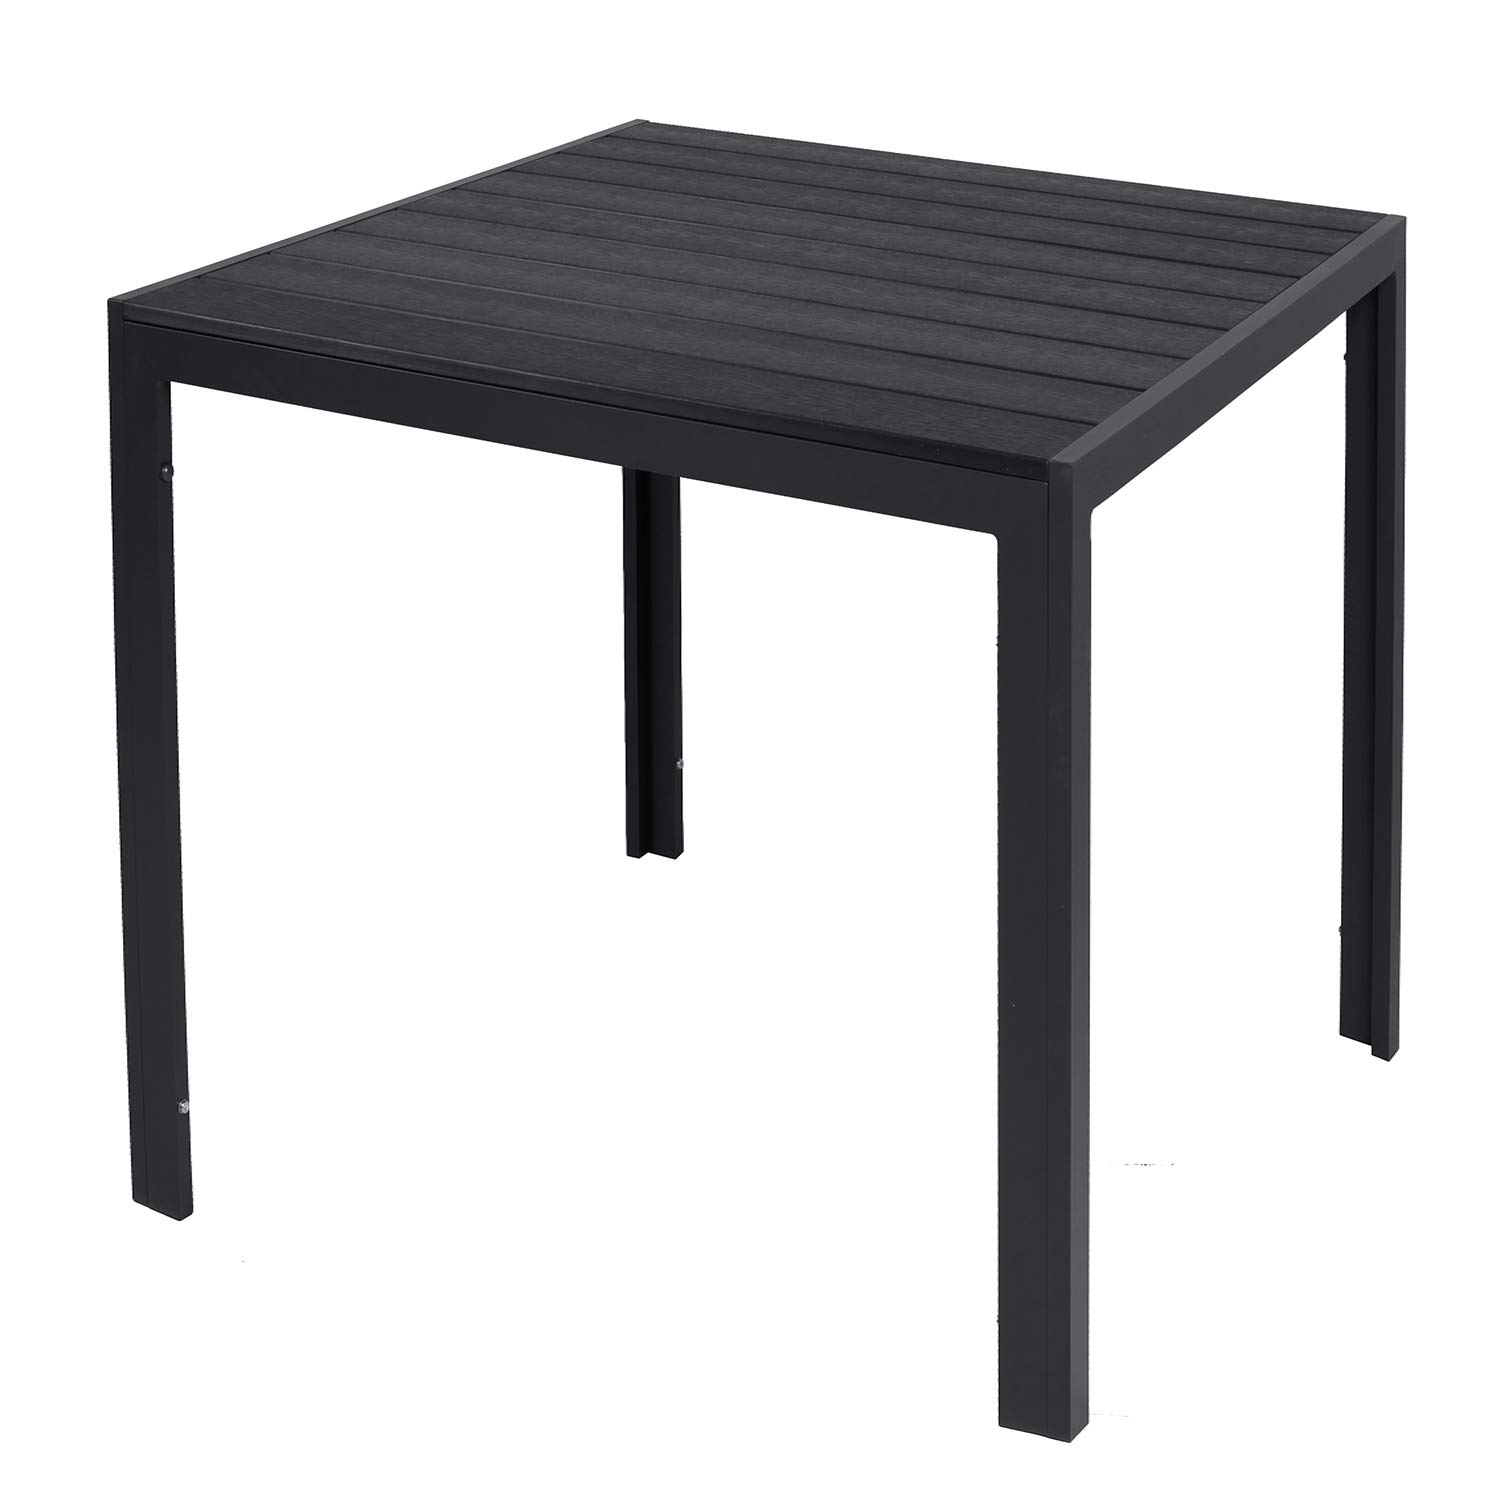 INDA-Exclusiv Wetterfester Aluminium Gartentisch anthrazit/schwarz Esstisch Gartenmöbel Tischplatte WPC Holzimitat witterungsbeständig, Maße Tische:90cm x 90cm